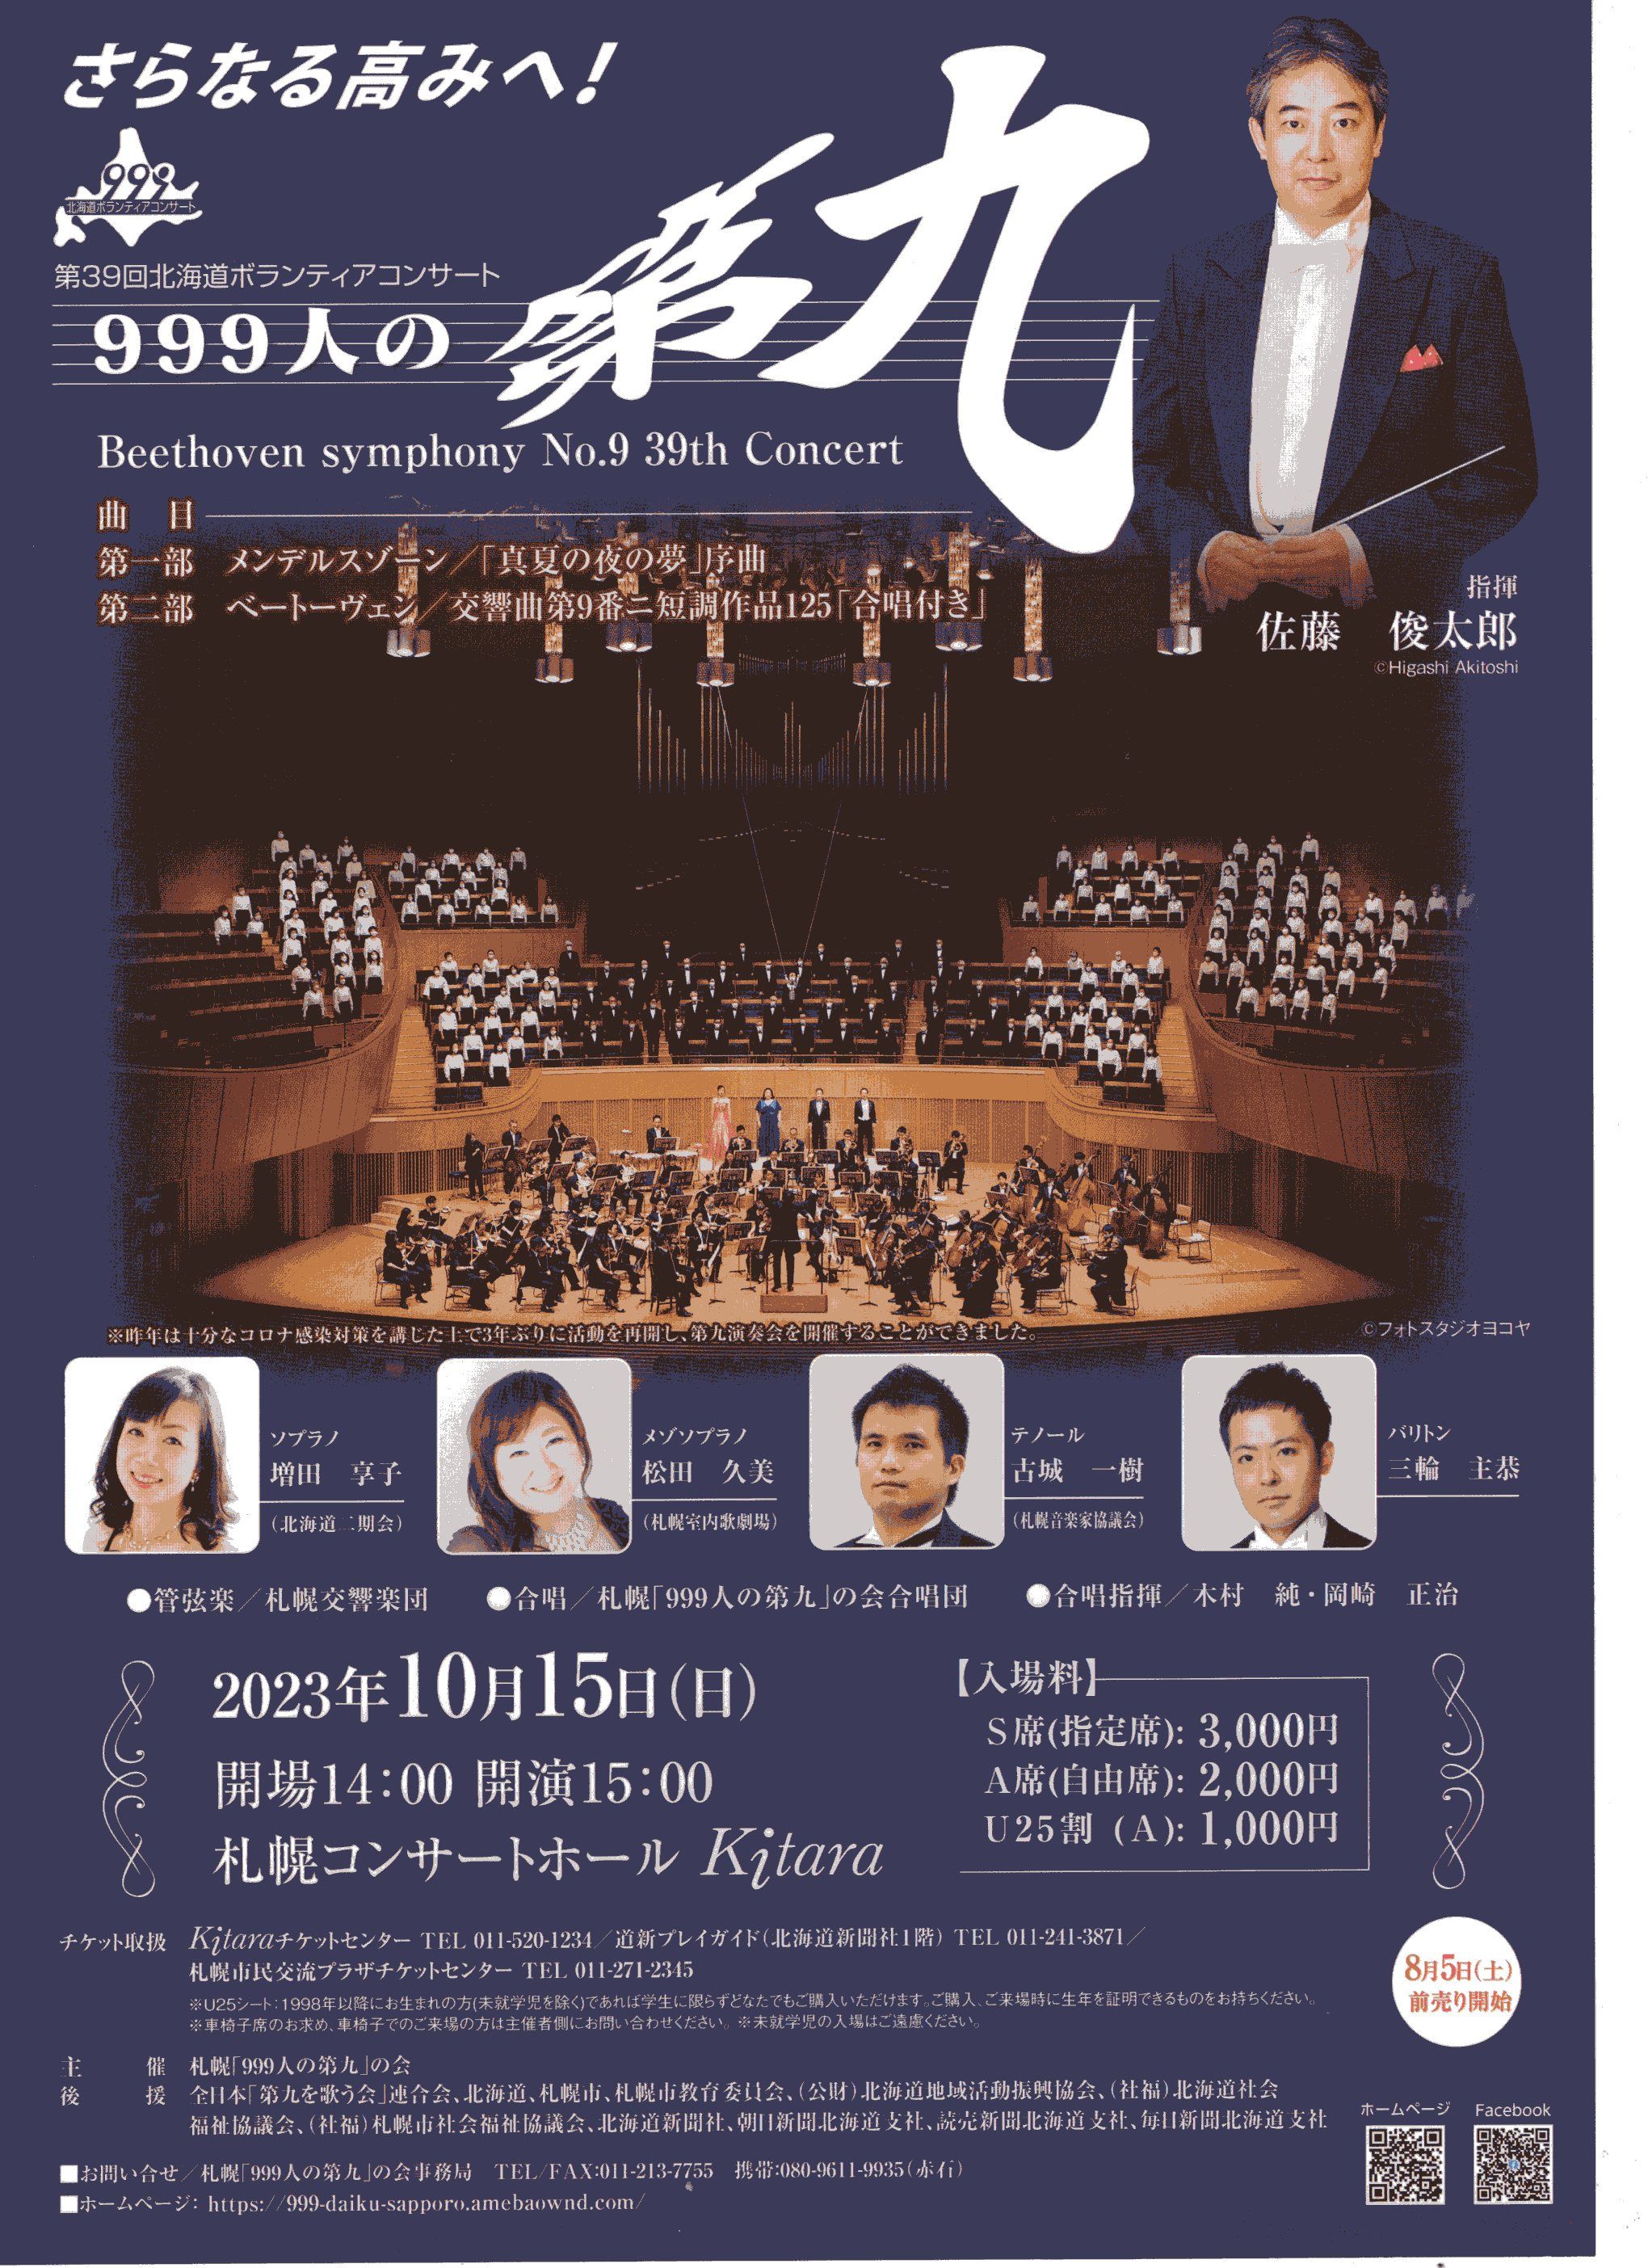 第39回北海道ボランティアコンサート「999人の第九｣合唱団員の募集